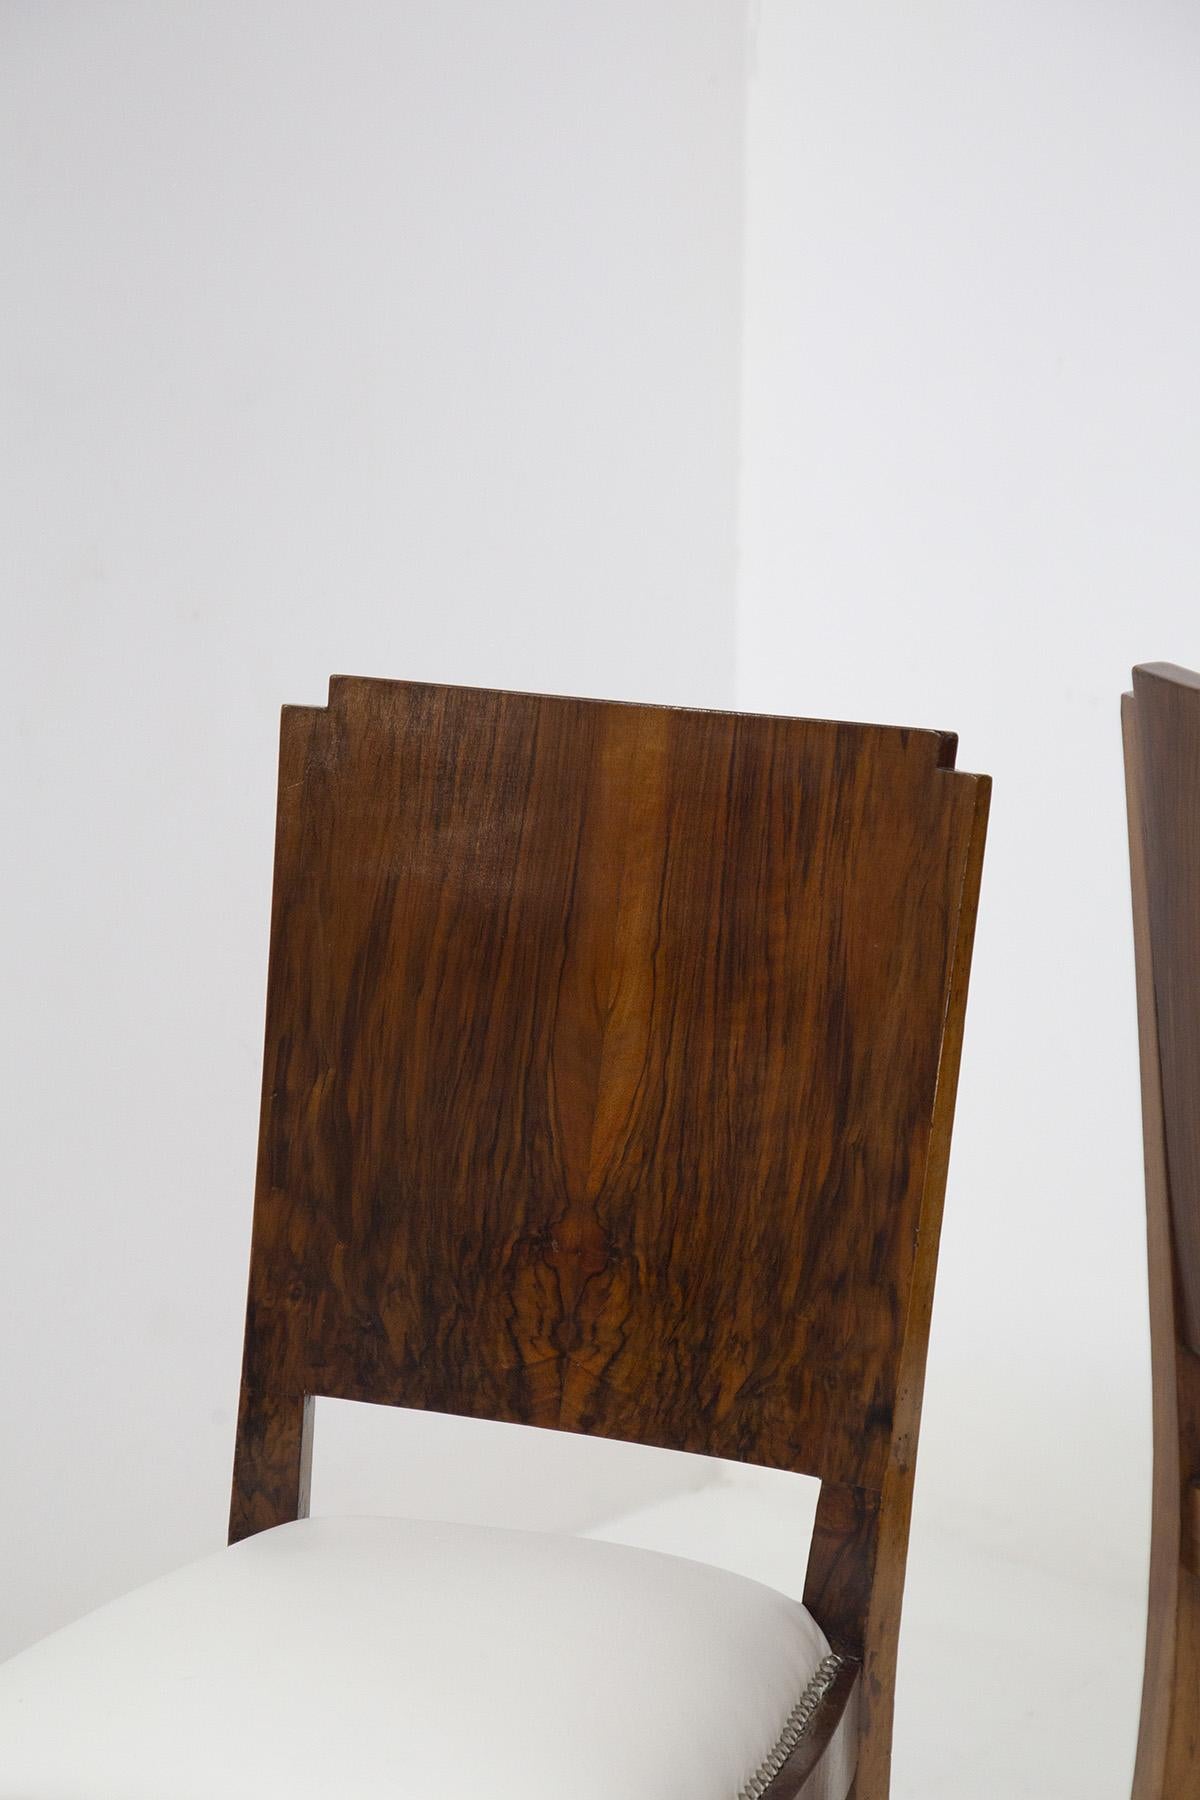 Schönes Paar Holzstühle, entworfen und hergestellt in den 1920er Jahren von einem italienischen Hersteller.
Die Stühle haben ein Gestell aus hellem Nussbaumholz, das sehr gut gepflegt wurde.
Die 4 Stützbeine haben eine quadratische Form, die sich